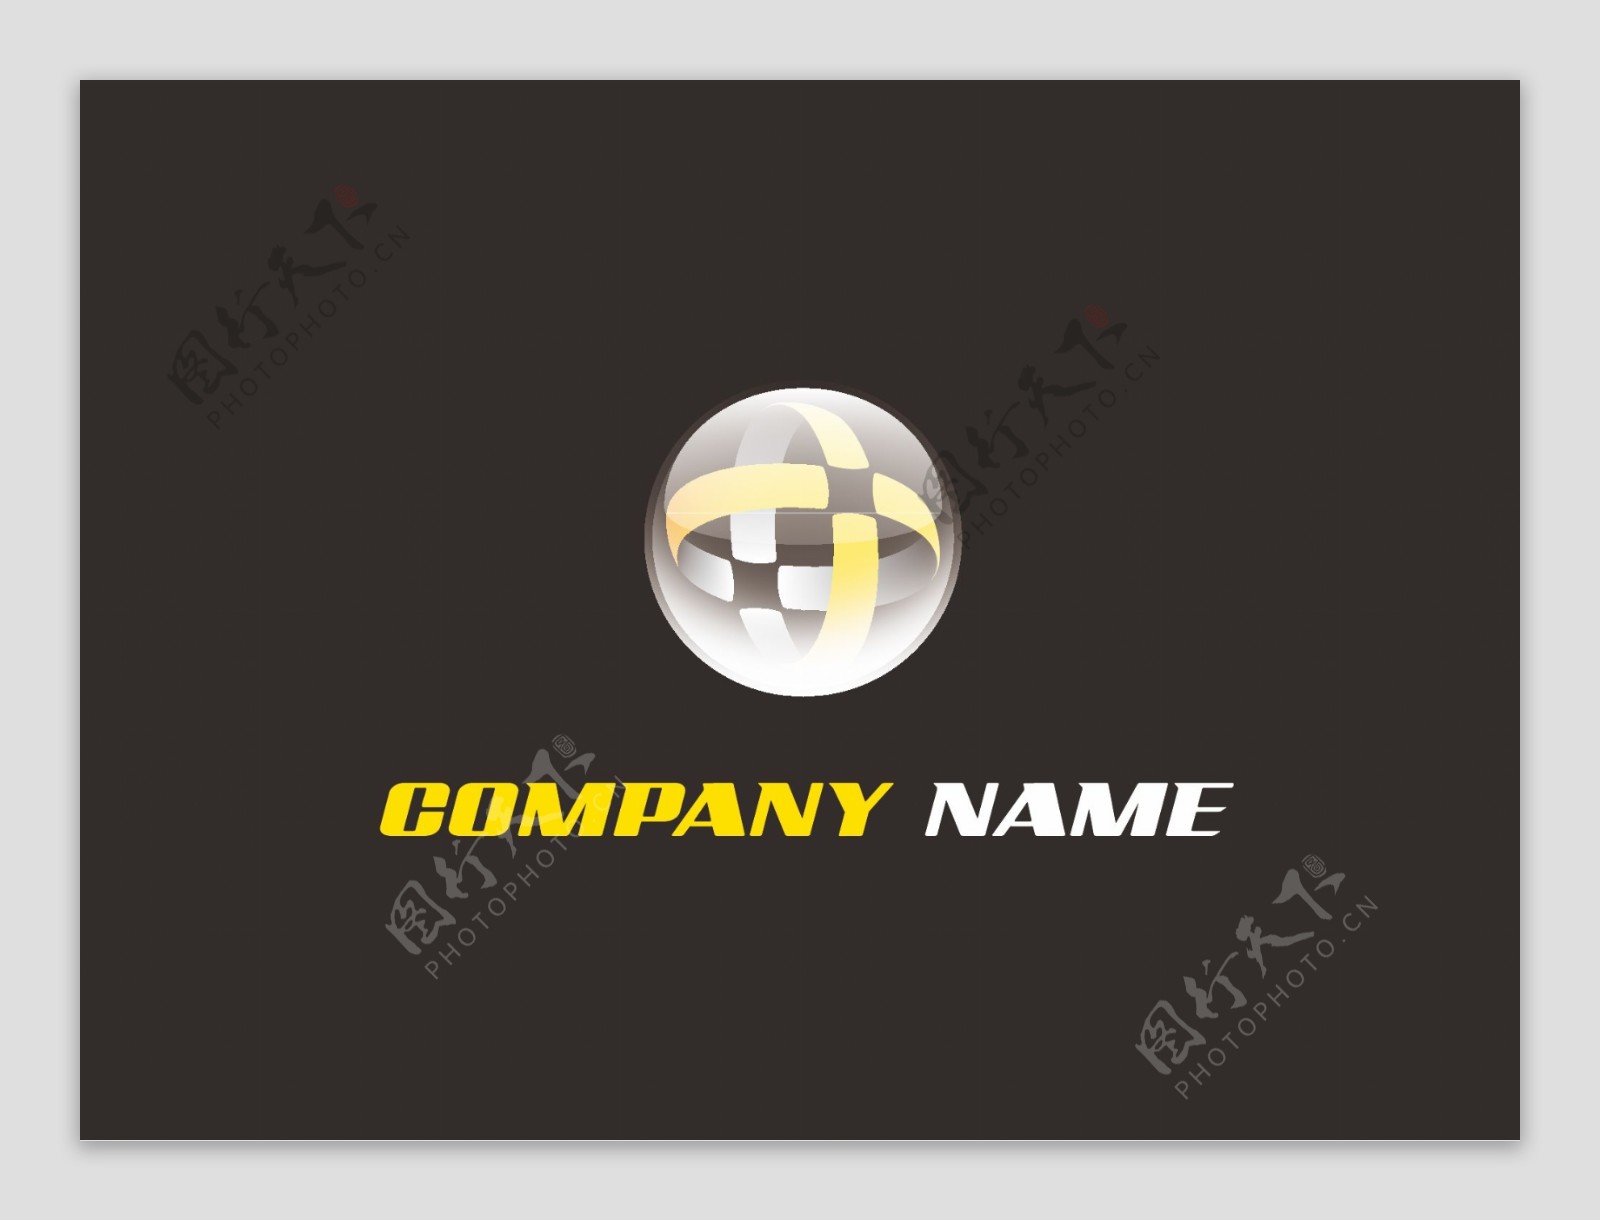 黄色标志空间轨道企业创意科技logo设计